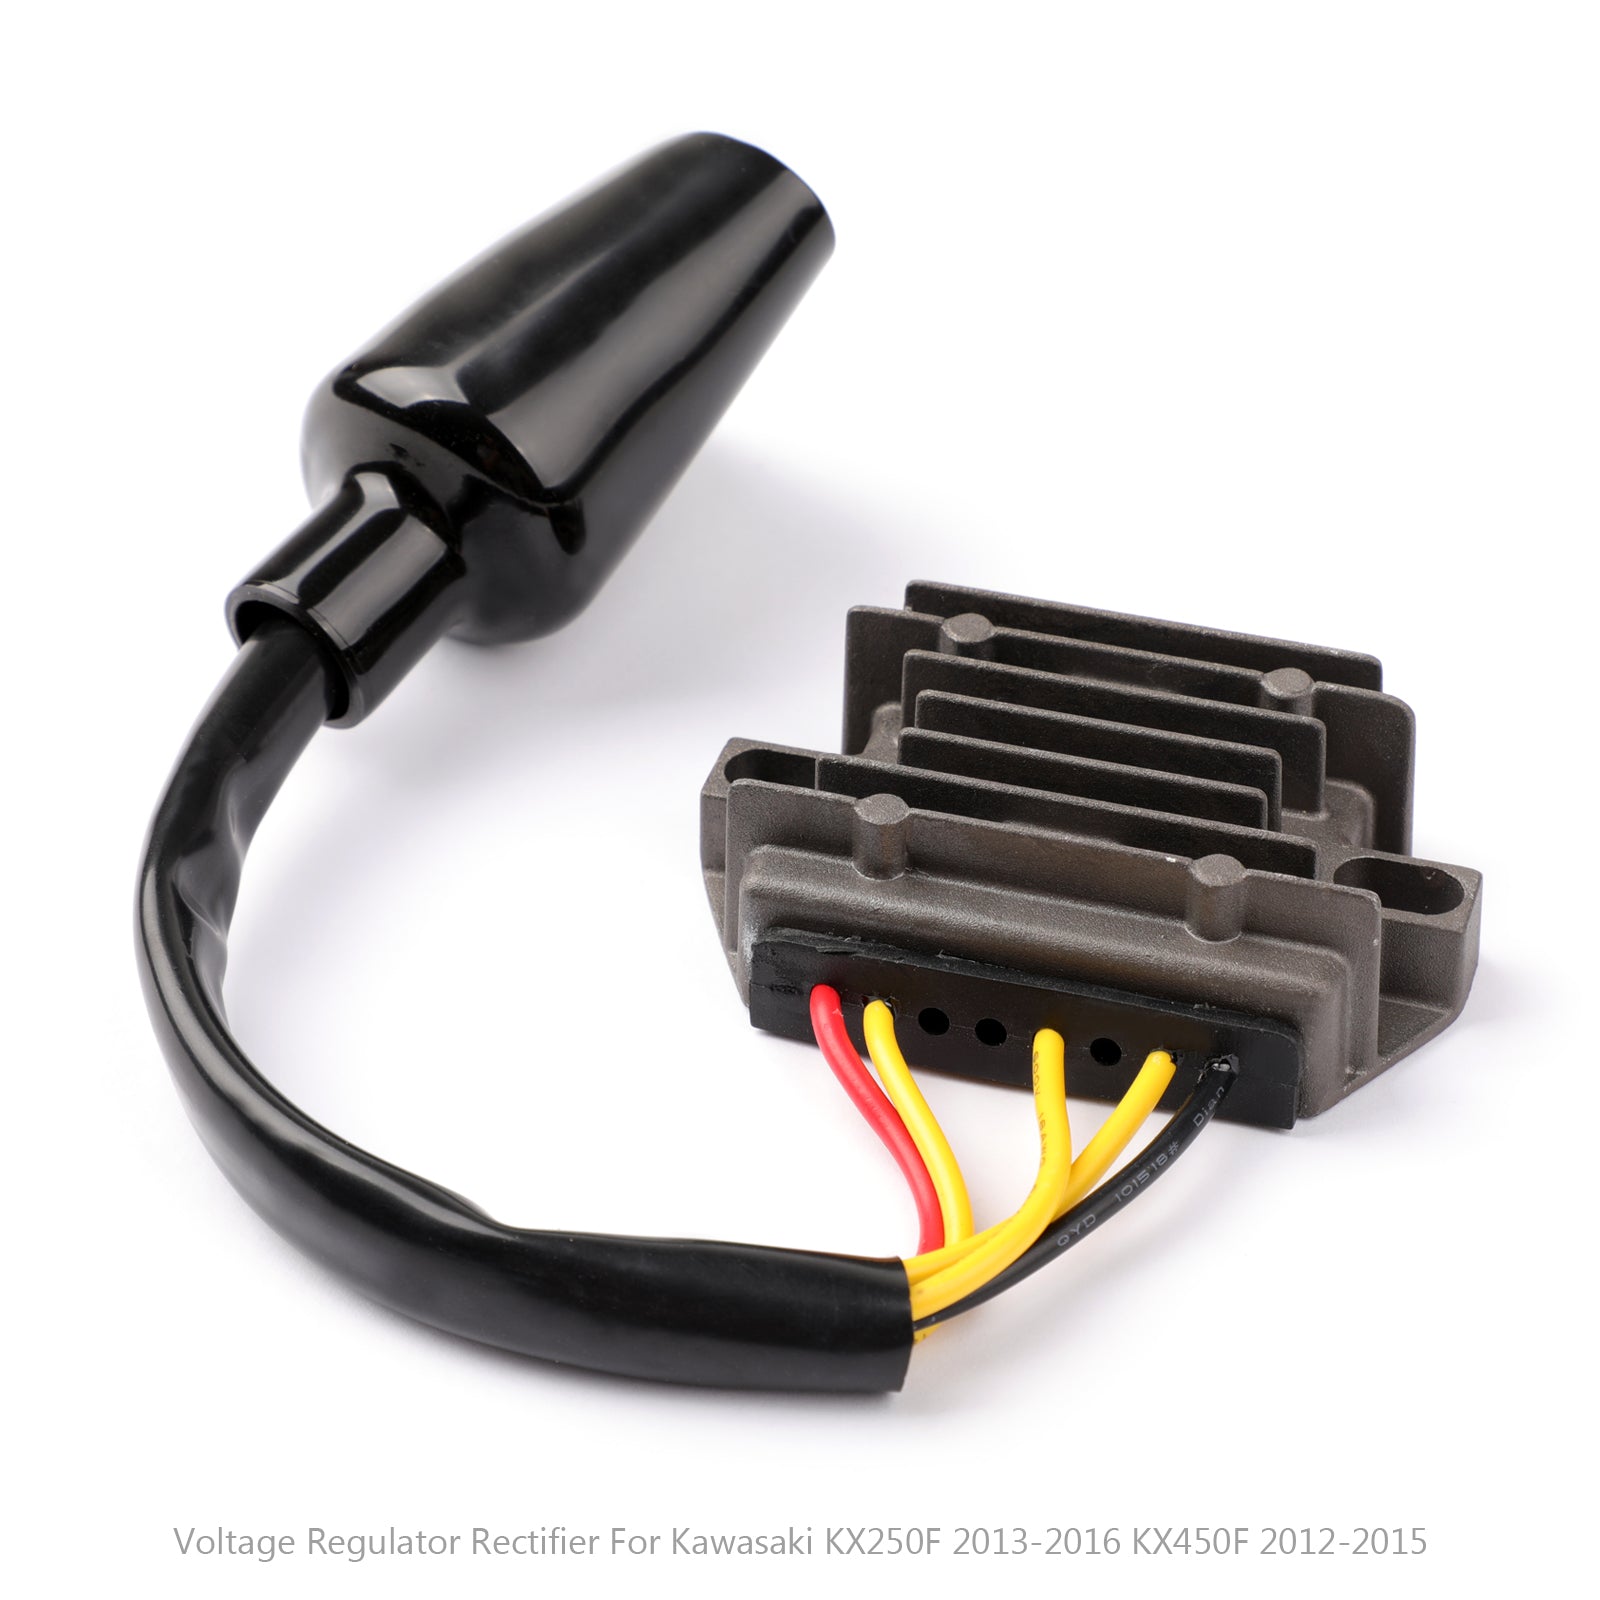 Voltage Regulator Rectifier Fit For Kawasaki KX250F 2013-2016 KX450F 2012-2015